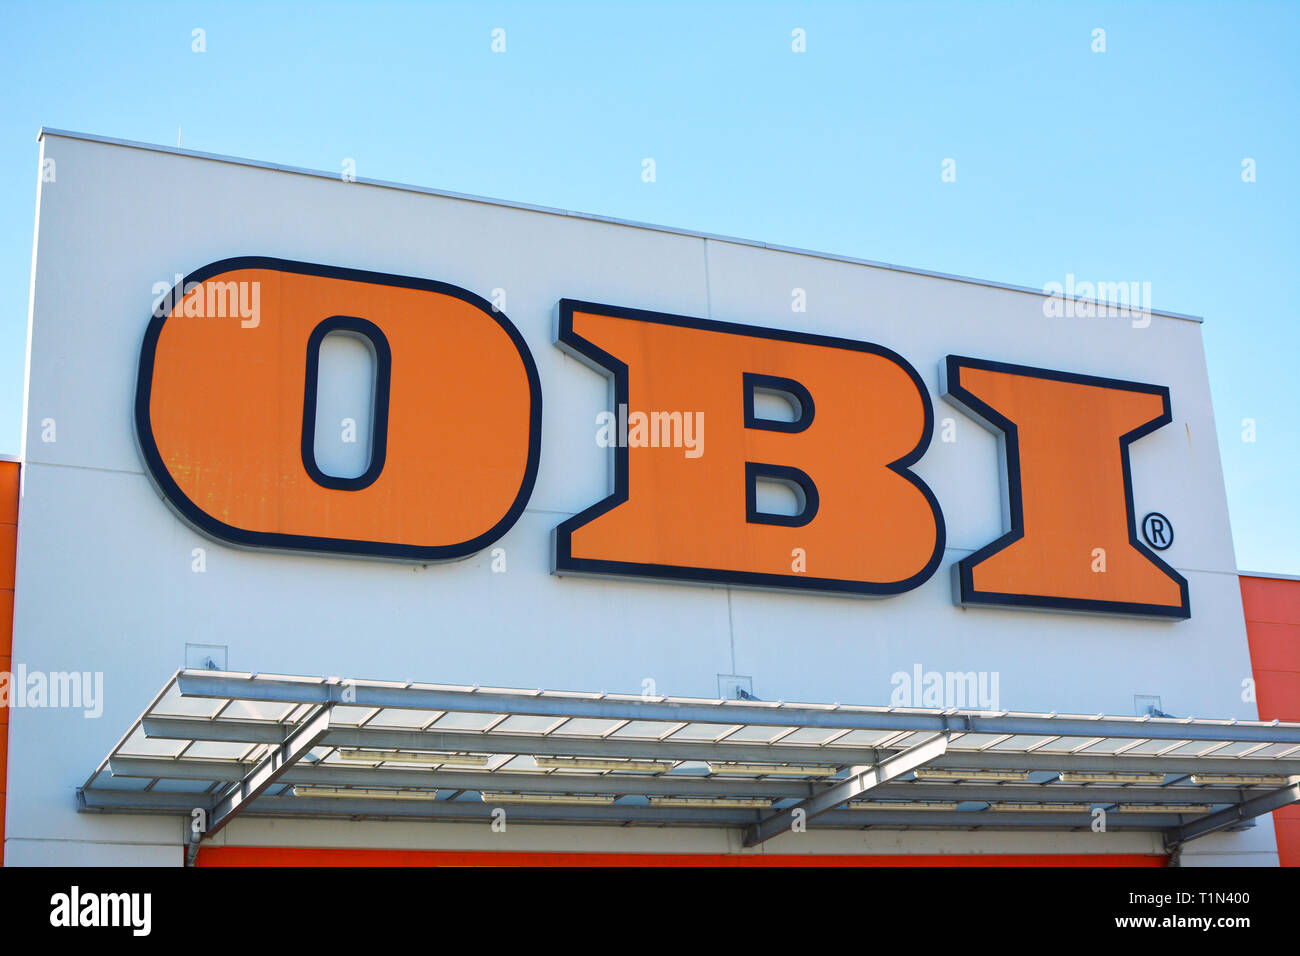 Tienda con logotipo de color naranja de la multinacional alemana de mejoras para el hogar y jardinería venta empresa llamado Obi en Heidelberg, Alemania Foto de stock